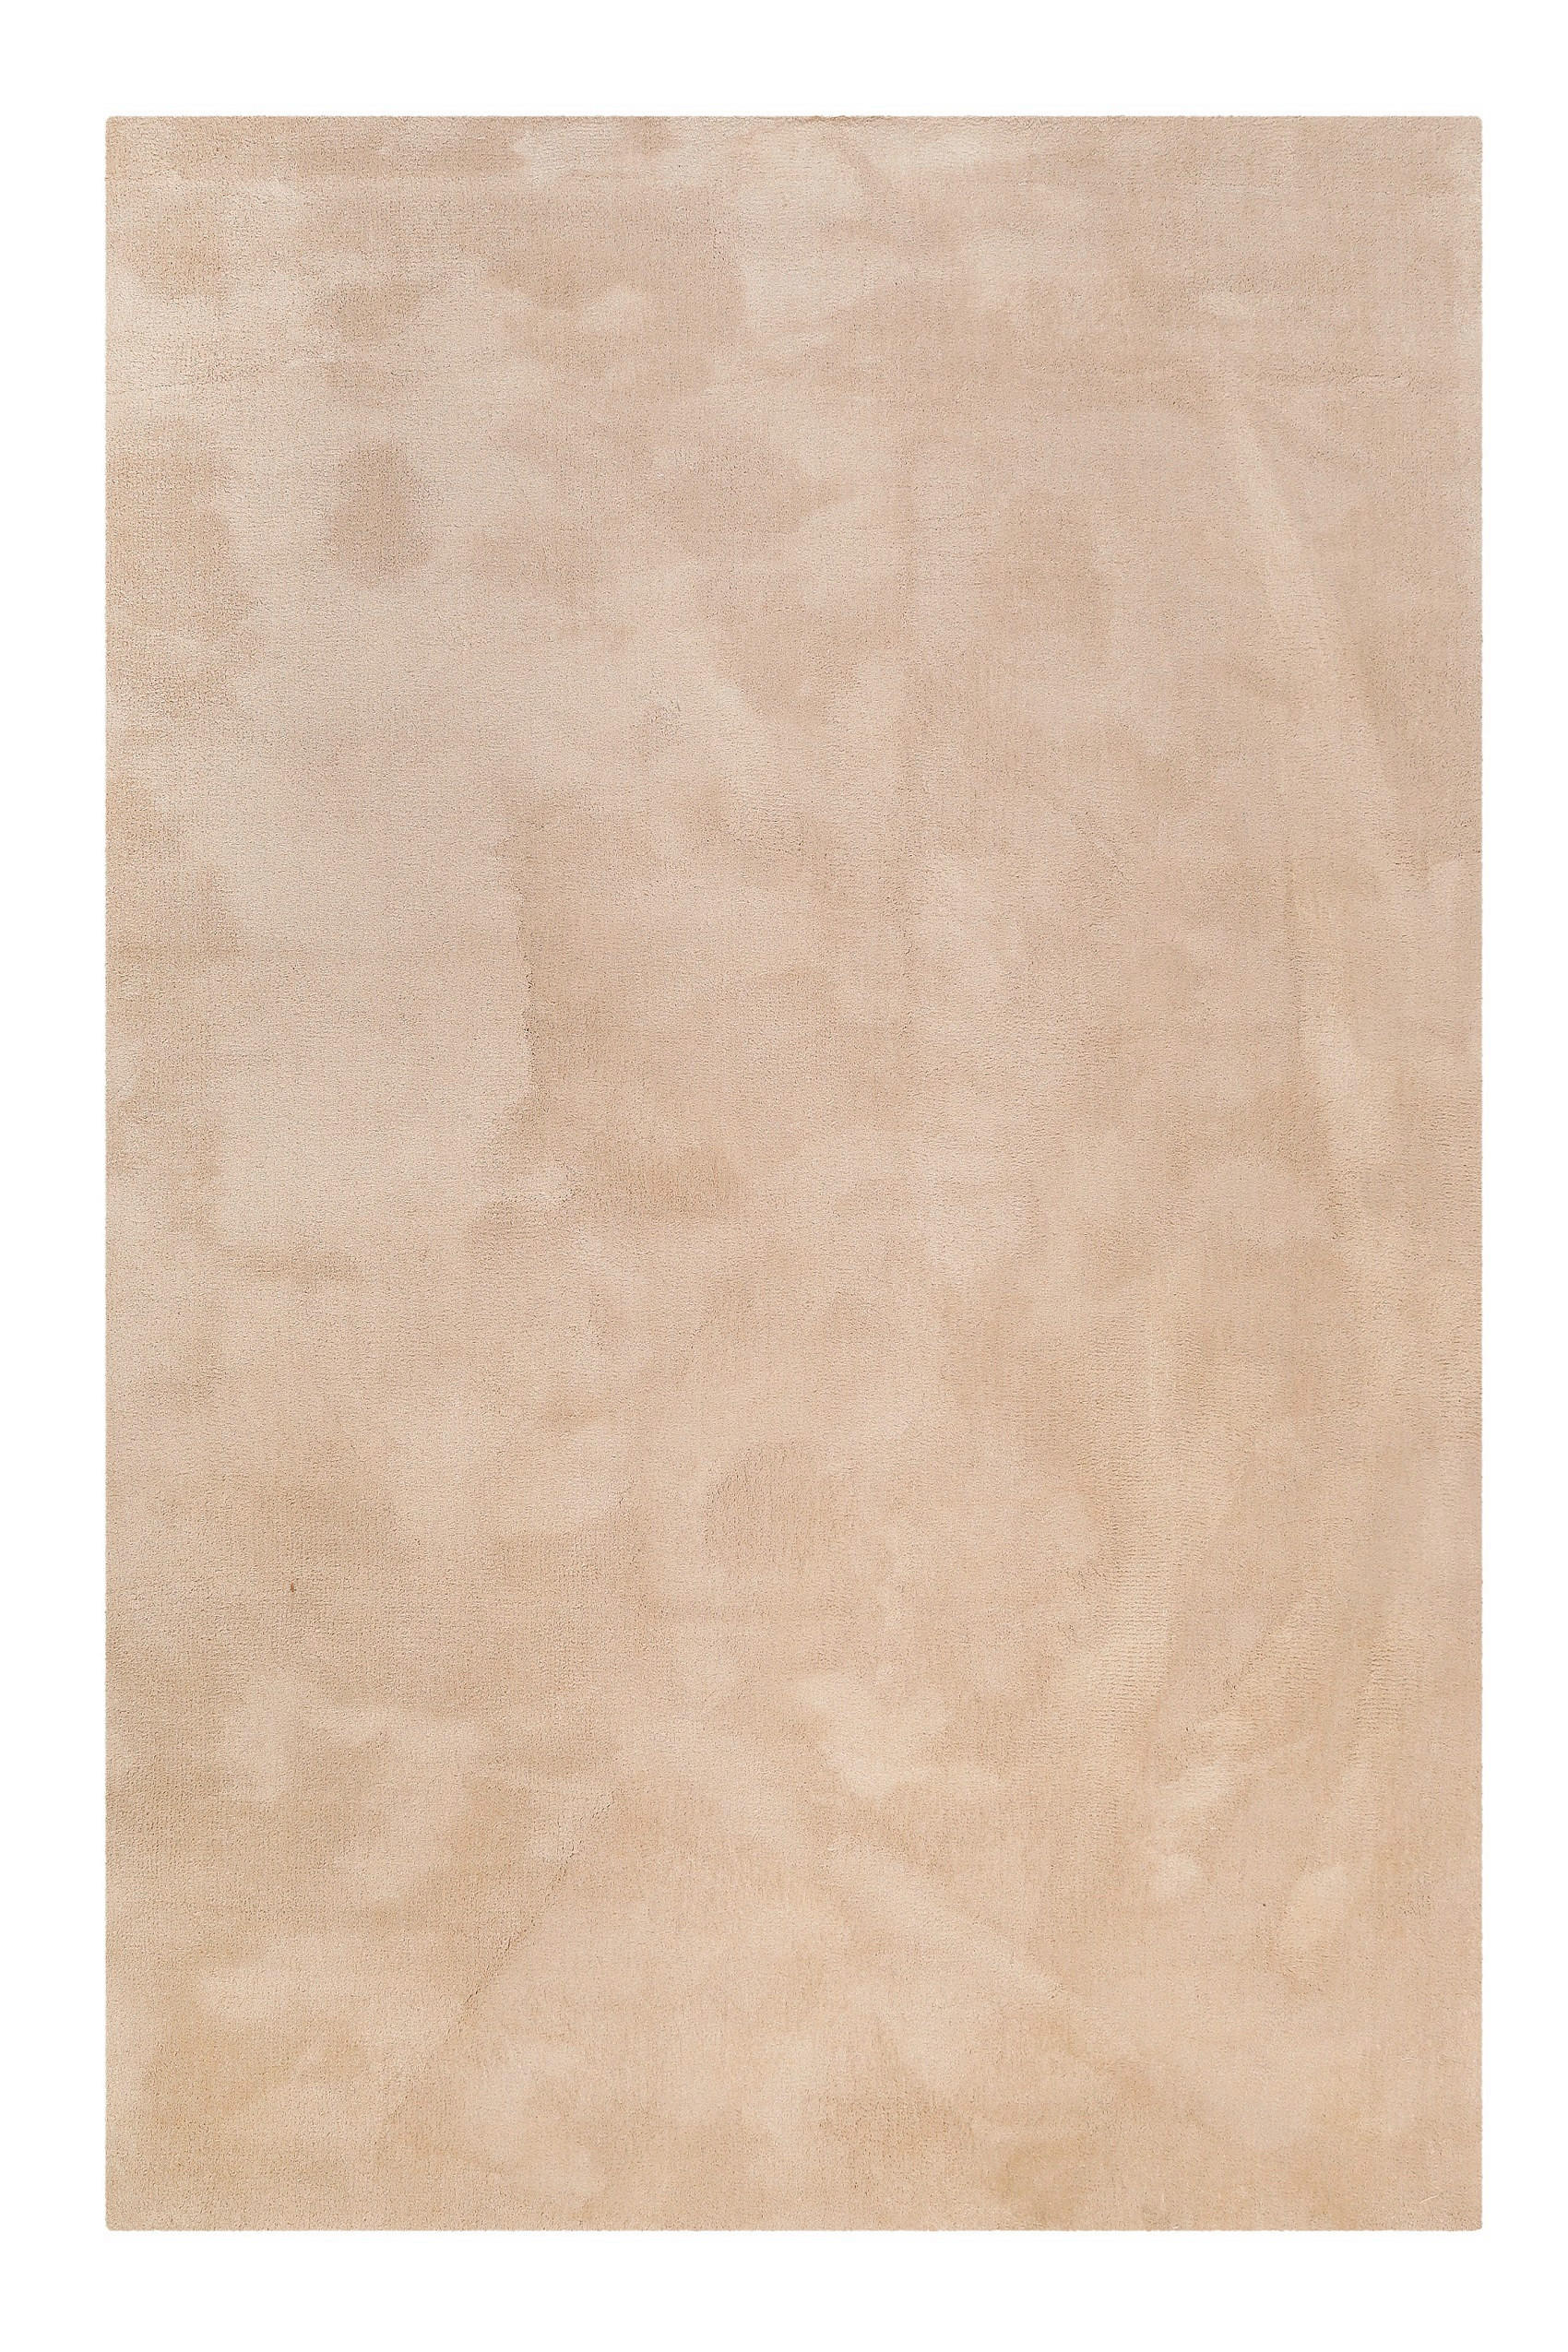 HOCHFLORTEPPICH 120/170 cm Vanessa  - Beige, Design, Textil (120/170cm) - Novel